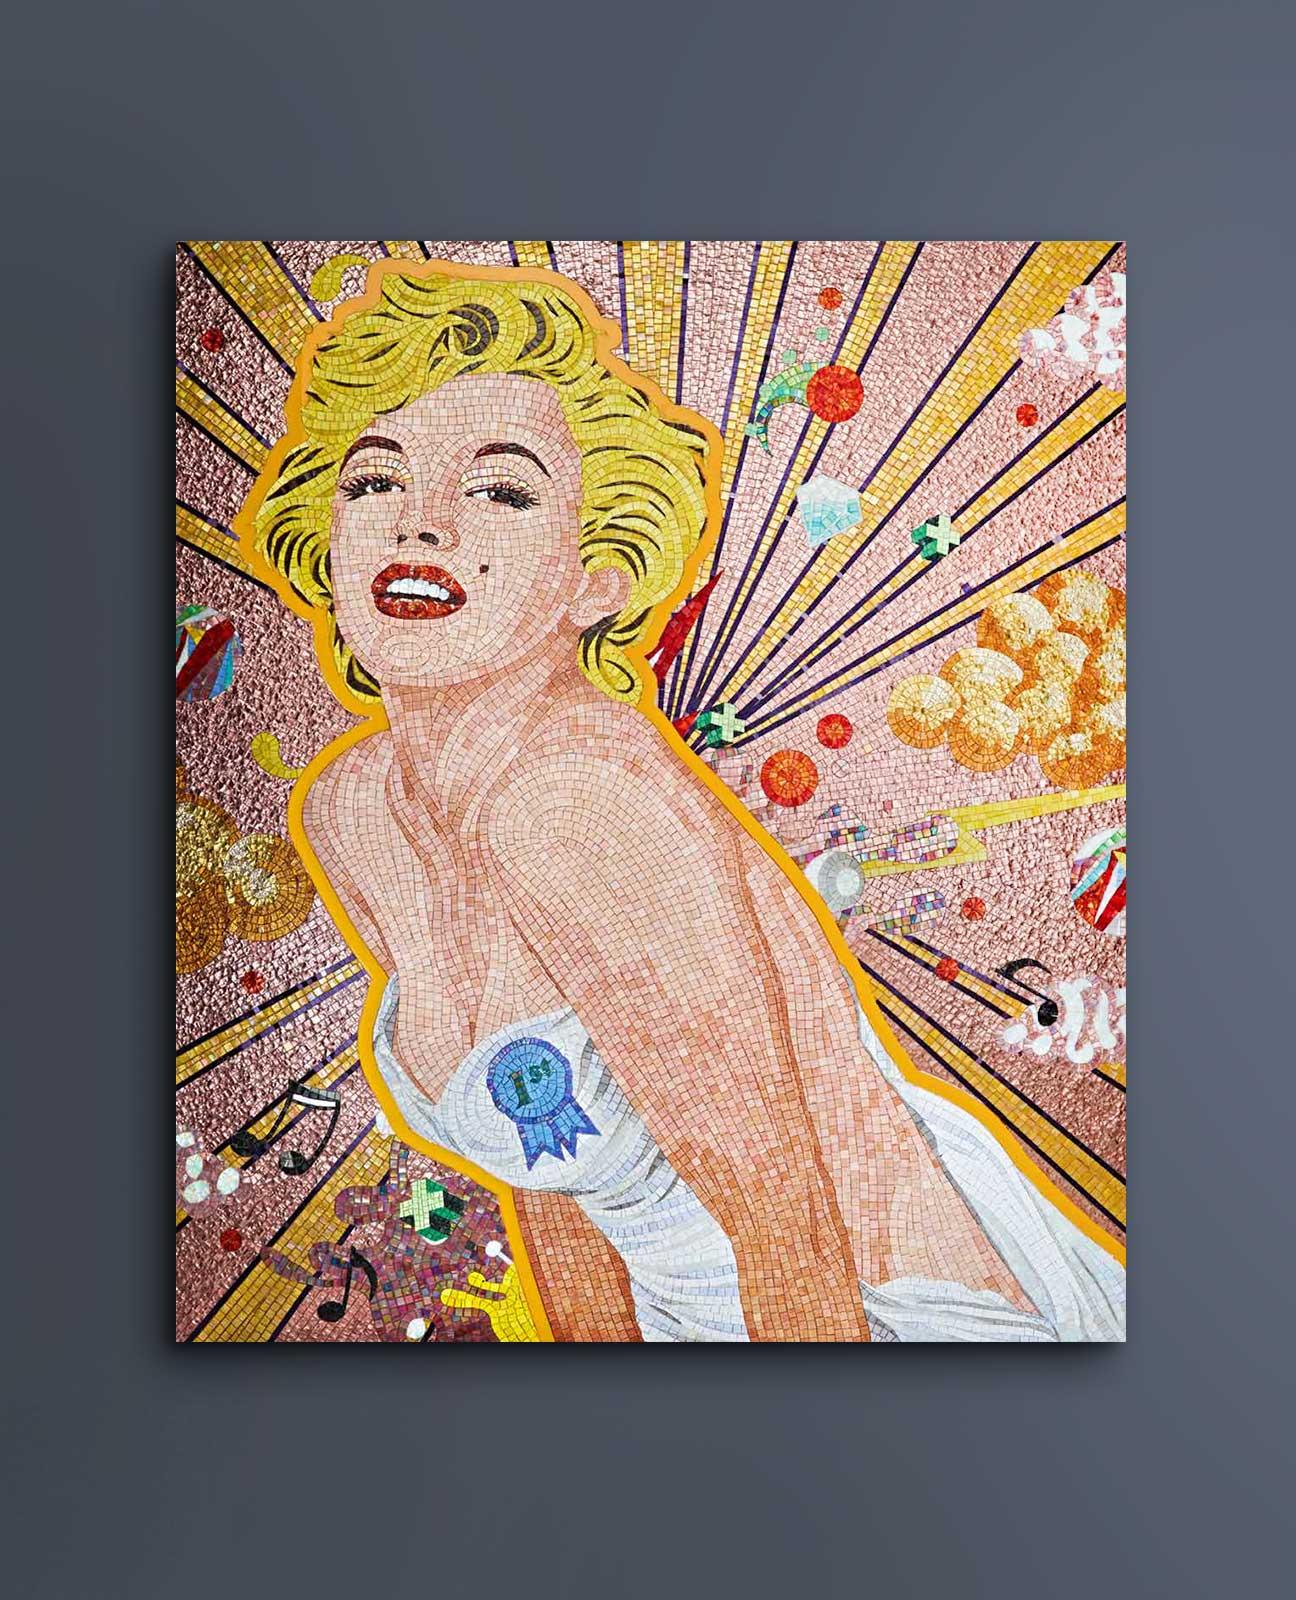 Cette mosaïque colorée d'inspiration pop est une ode à la populaire et unique Marilyn Monroe. La diva reste l'une des actrices les plus emblématiques du grand écran. Entourée d'éléments multicolores, Monroe pose de manière sensuelle en regardant ses